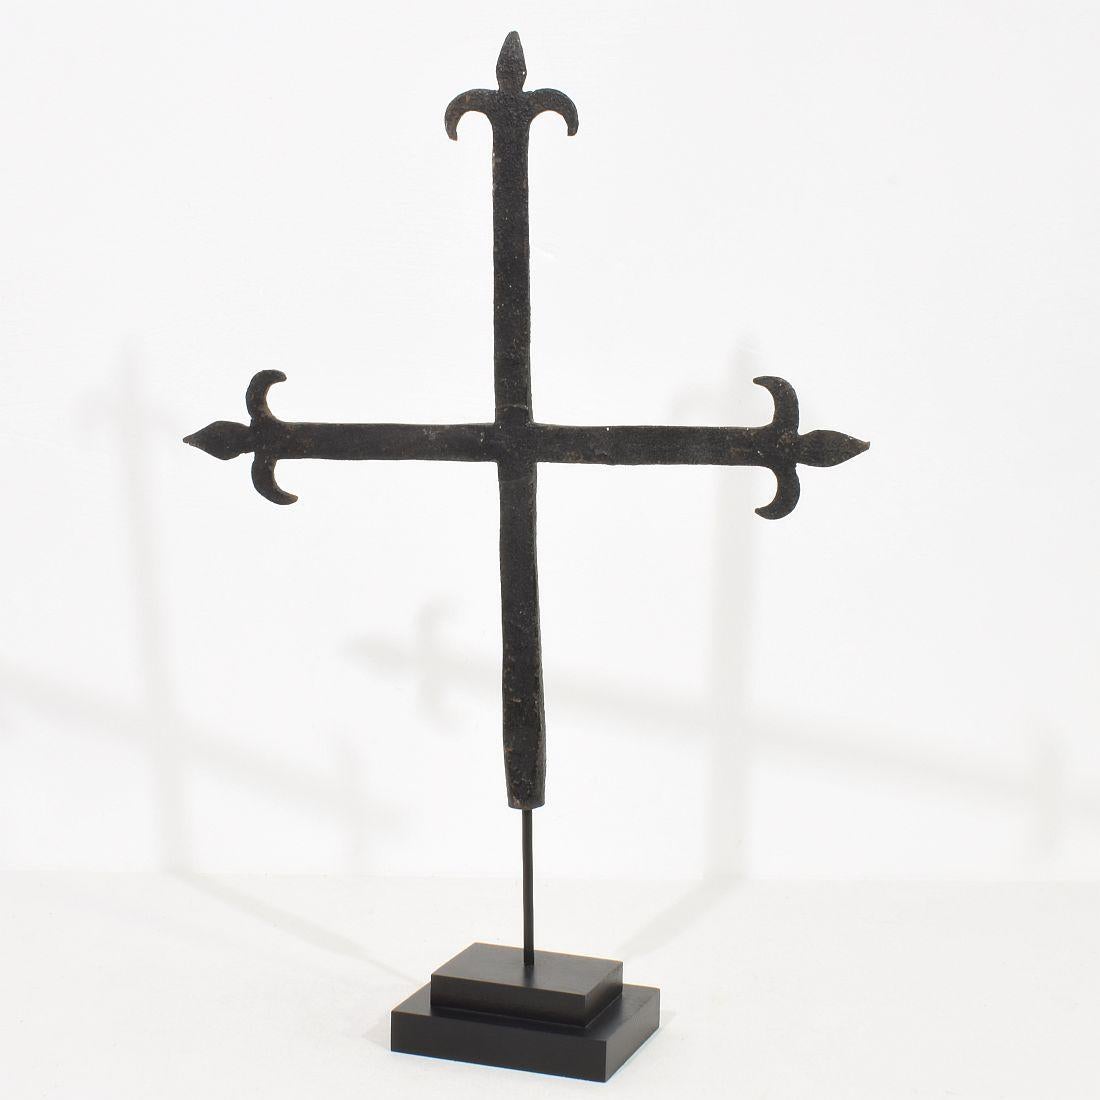 Croix unique en fer forgé à la main qui se trouvait autrefois au centre d'un village provençal.
France, vers 1650-1750. Météorisé.
Les mesures sont prises avec la base en bois.